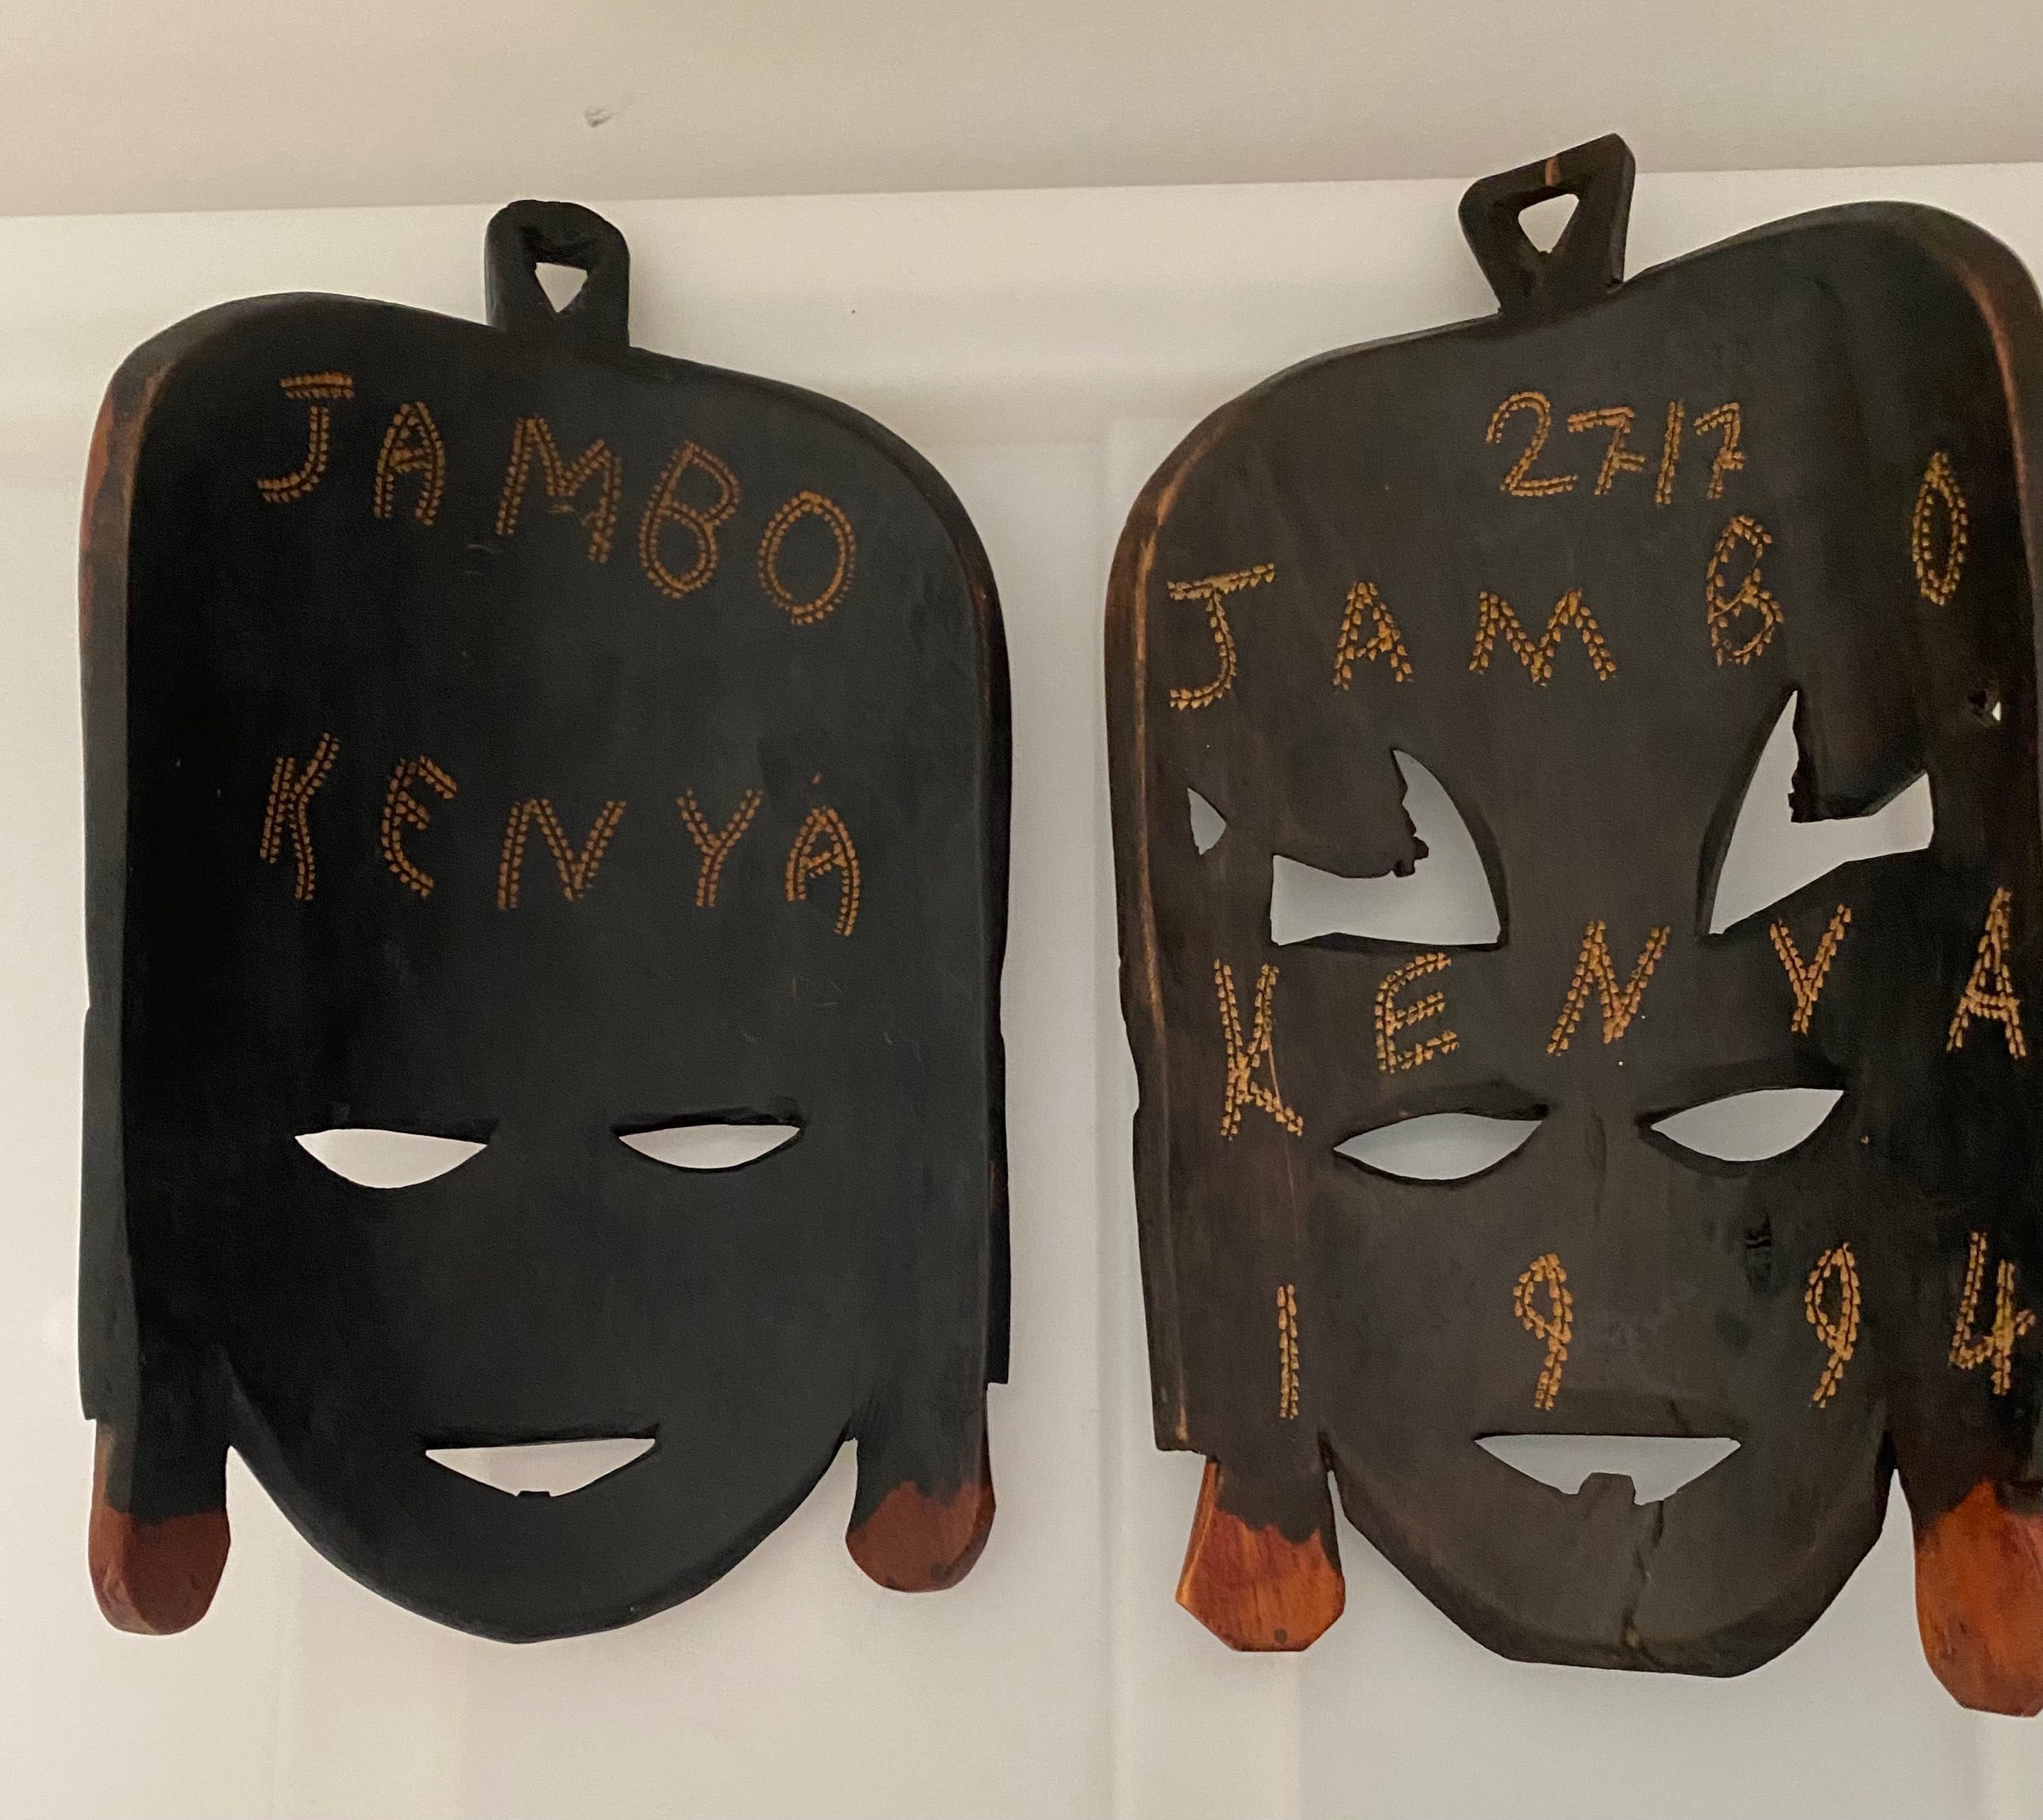 Par de máscaras africanas em madeira